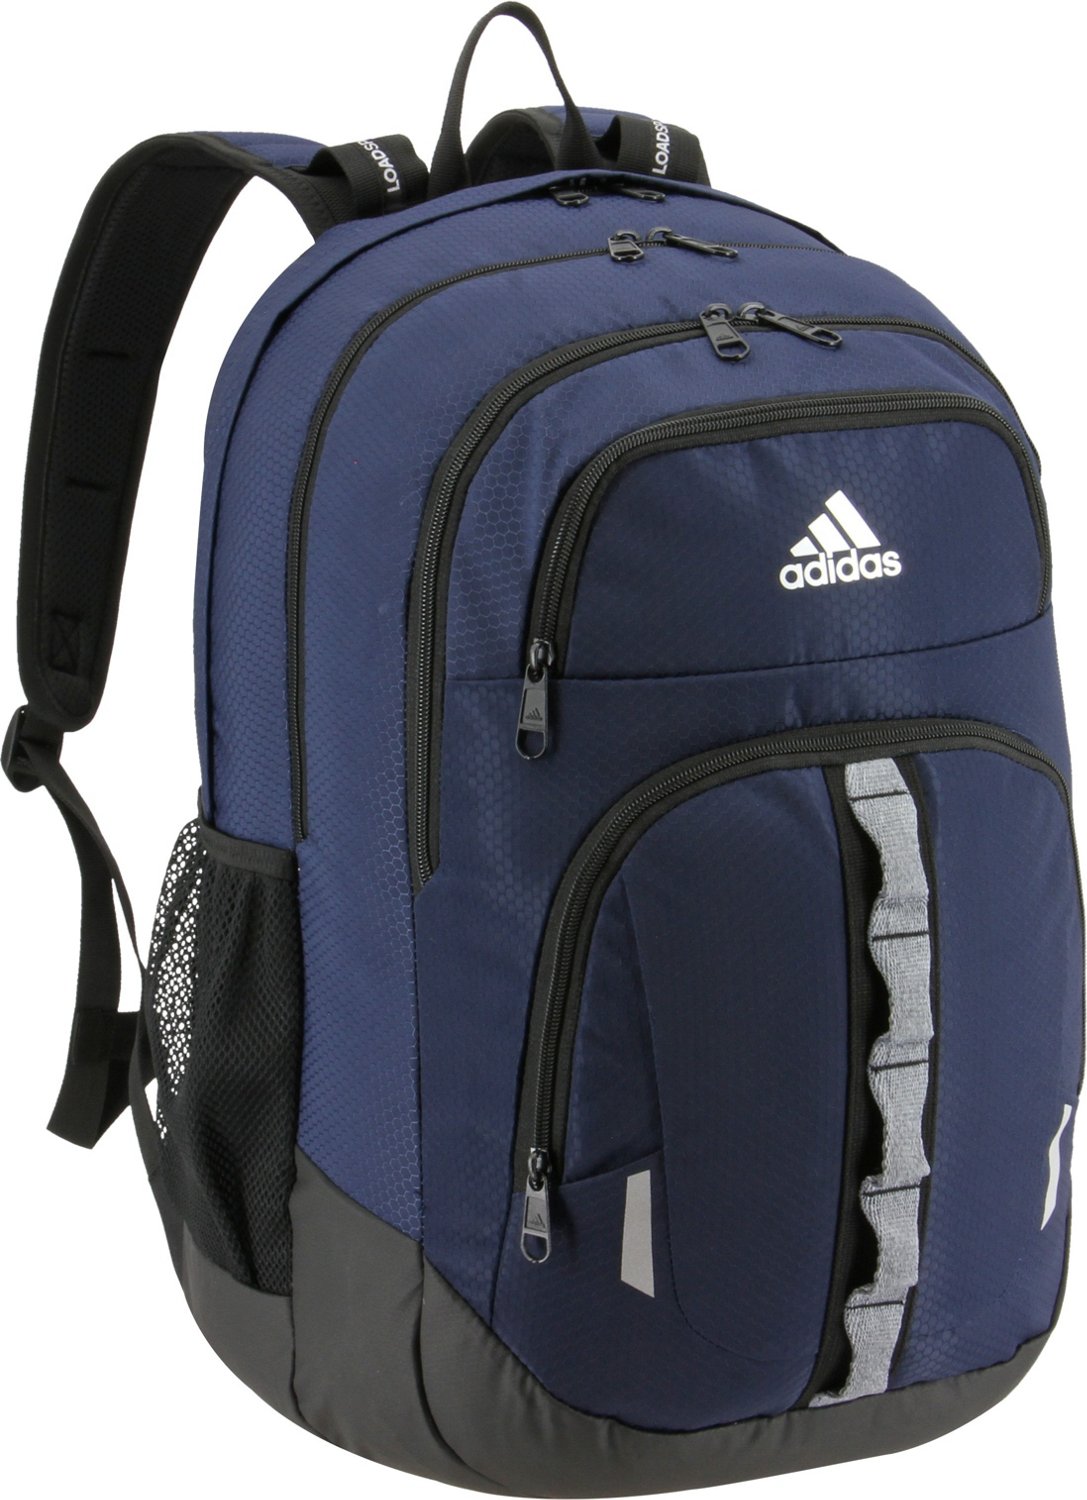 Adidasadidas Prime II Backpack Navy 